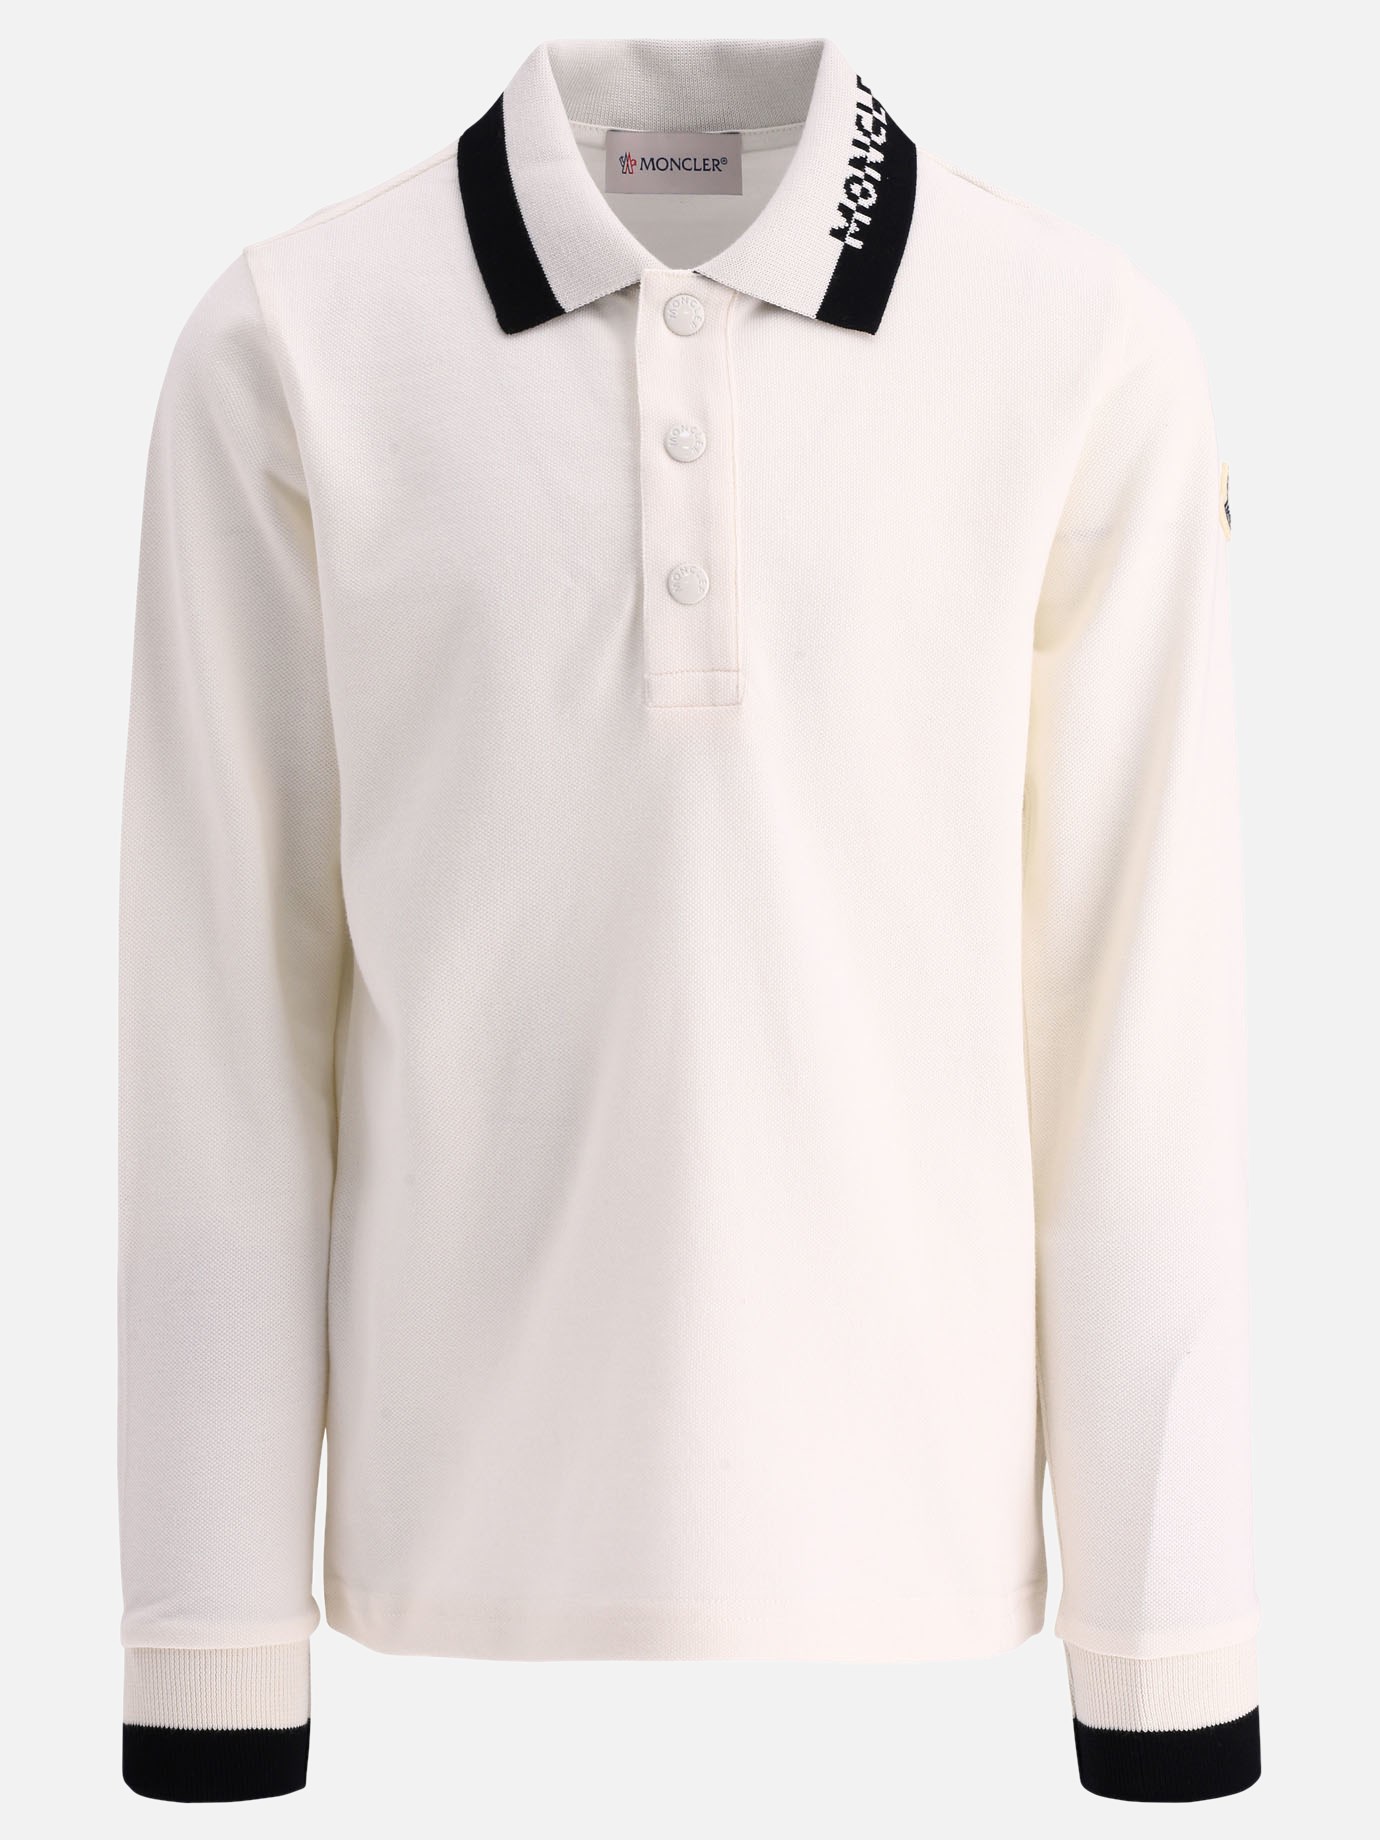 Collar-embroidered polo shirt